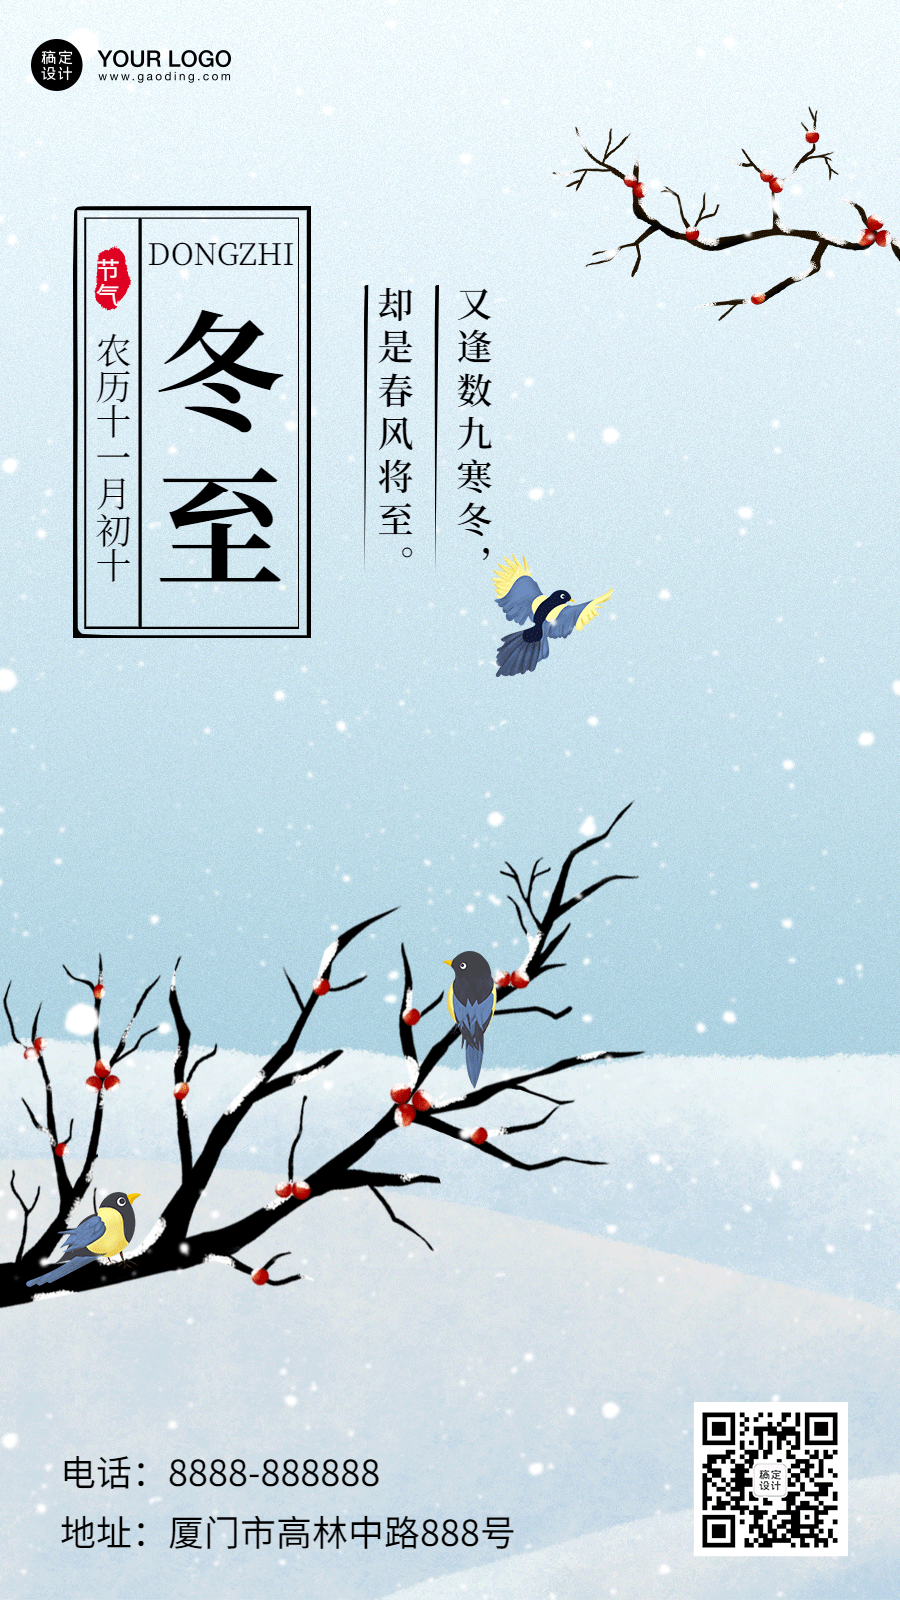 冬至节气祝福手绘插画动态海报